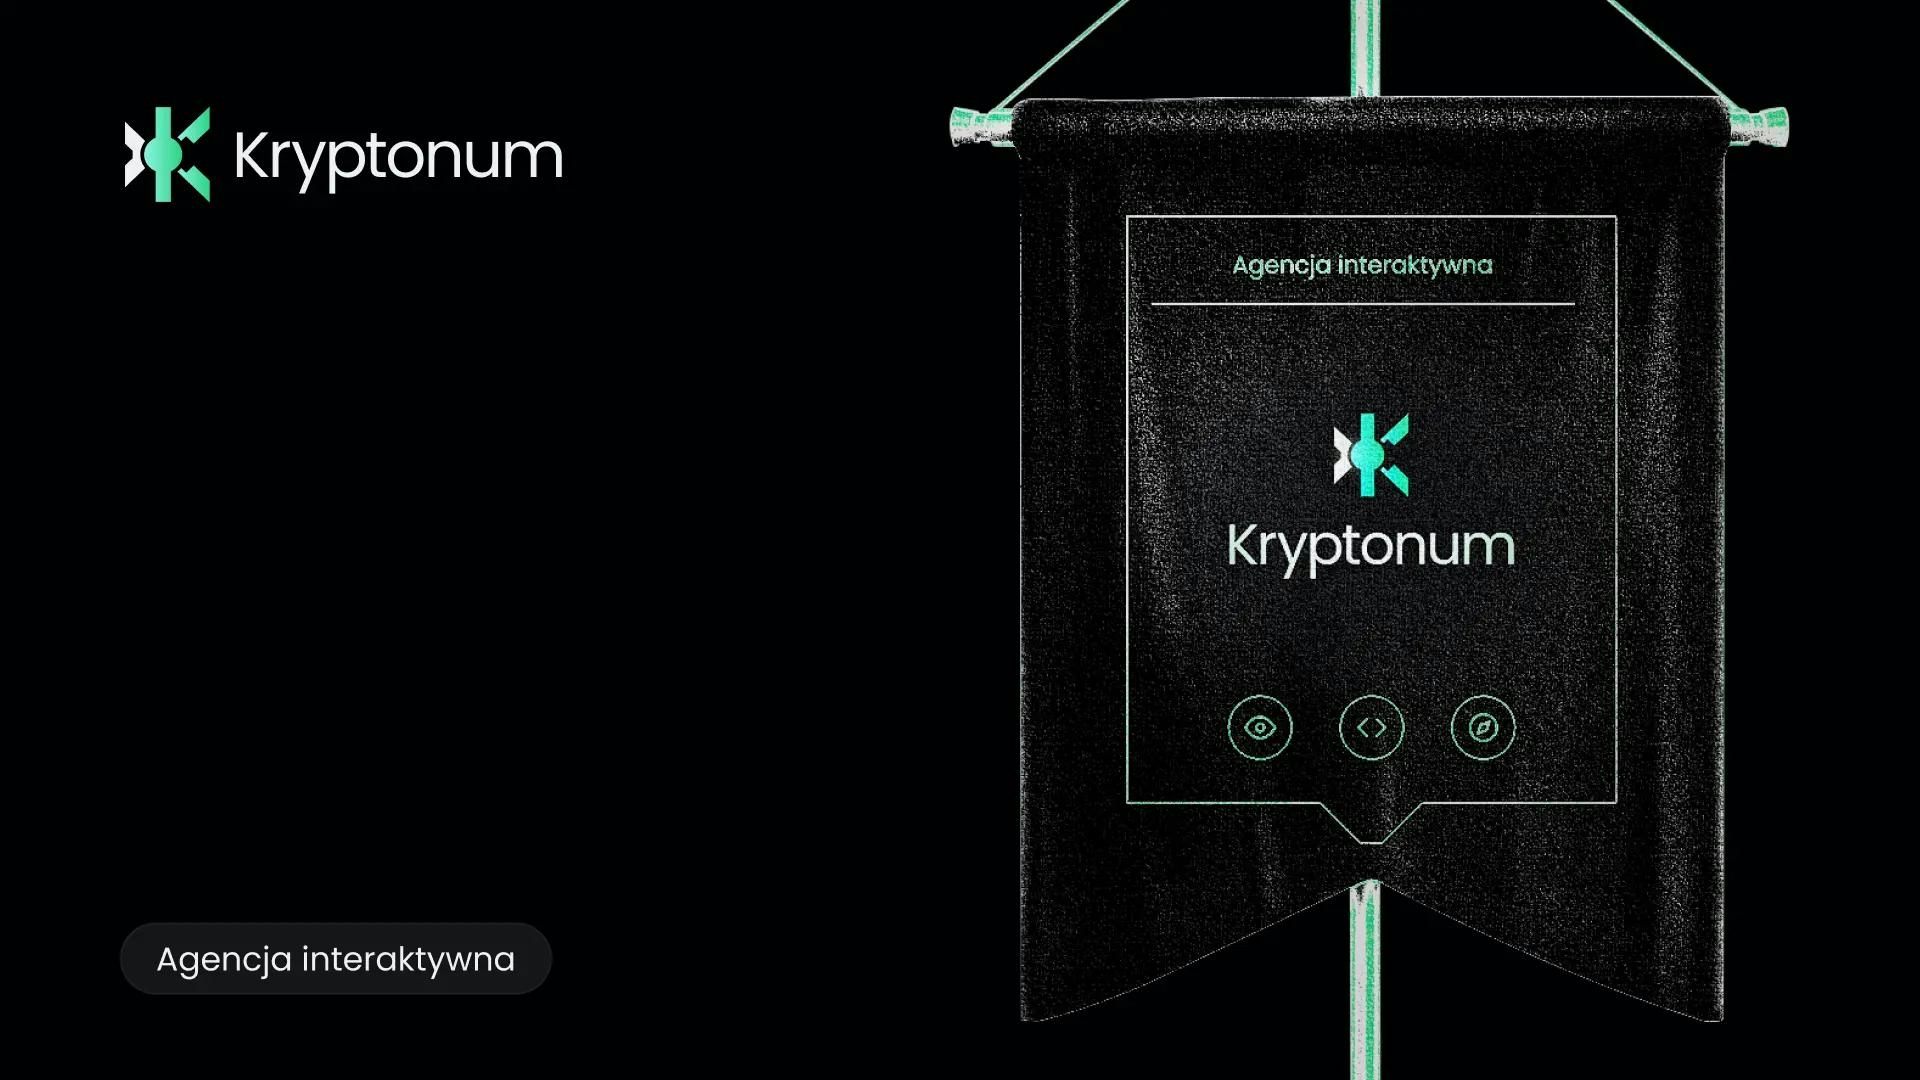 Proporzec z logo Kryptonum i podpisem agencja interaktywna. Obok logo Kryptonum, całość na ciemnym tle, z białymi i zielonymi akcentami